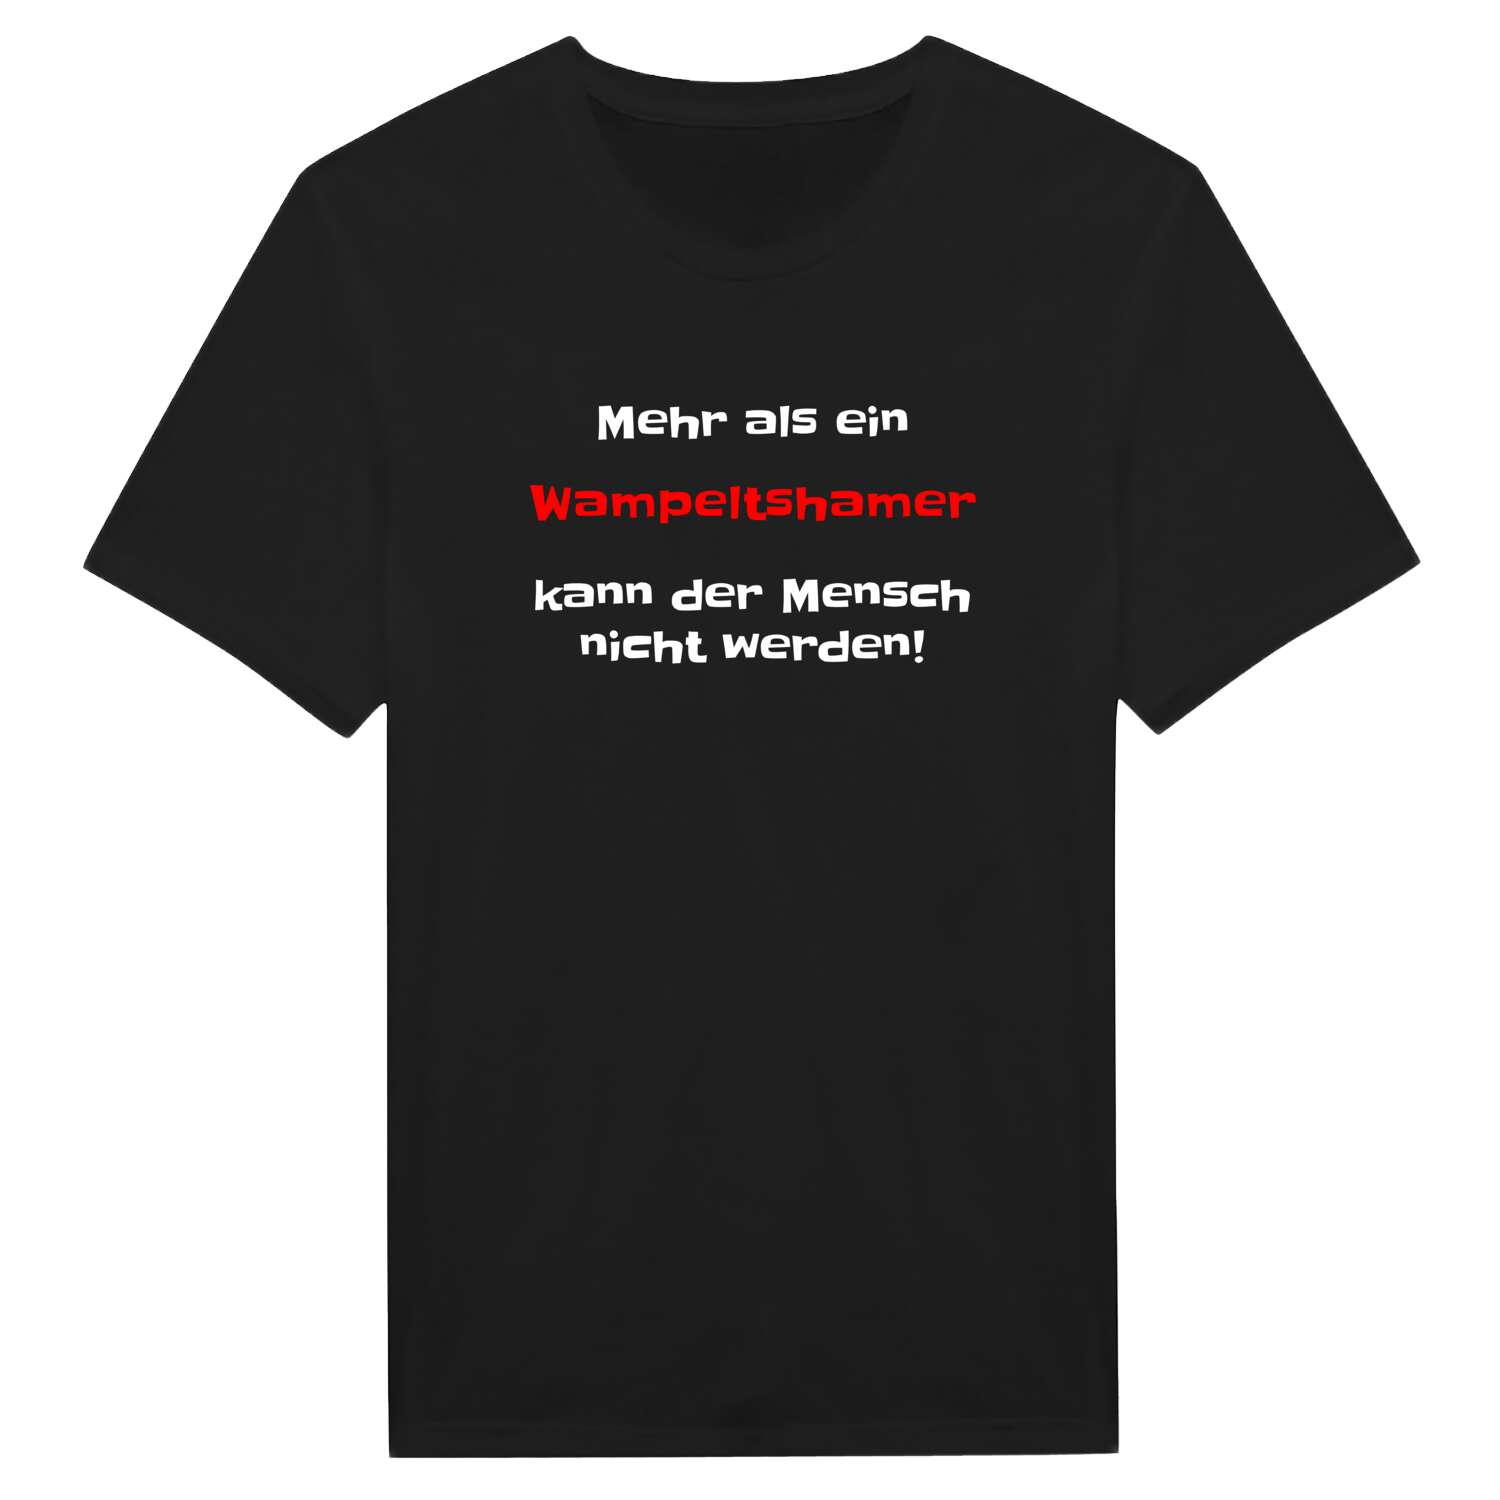 Wampeltsham T-Shirt »Mehr als ein«